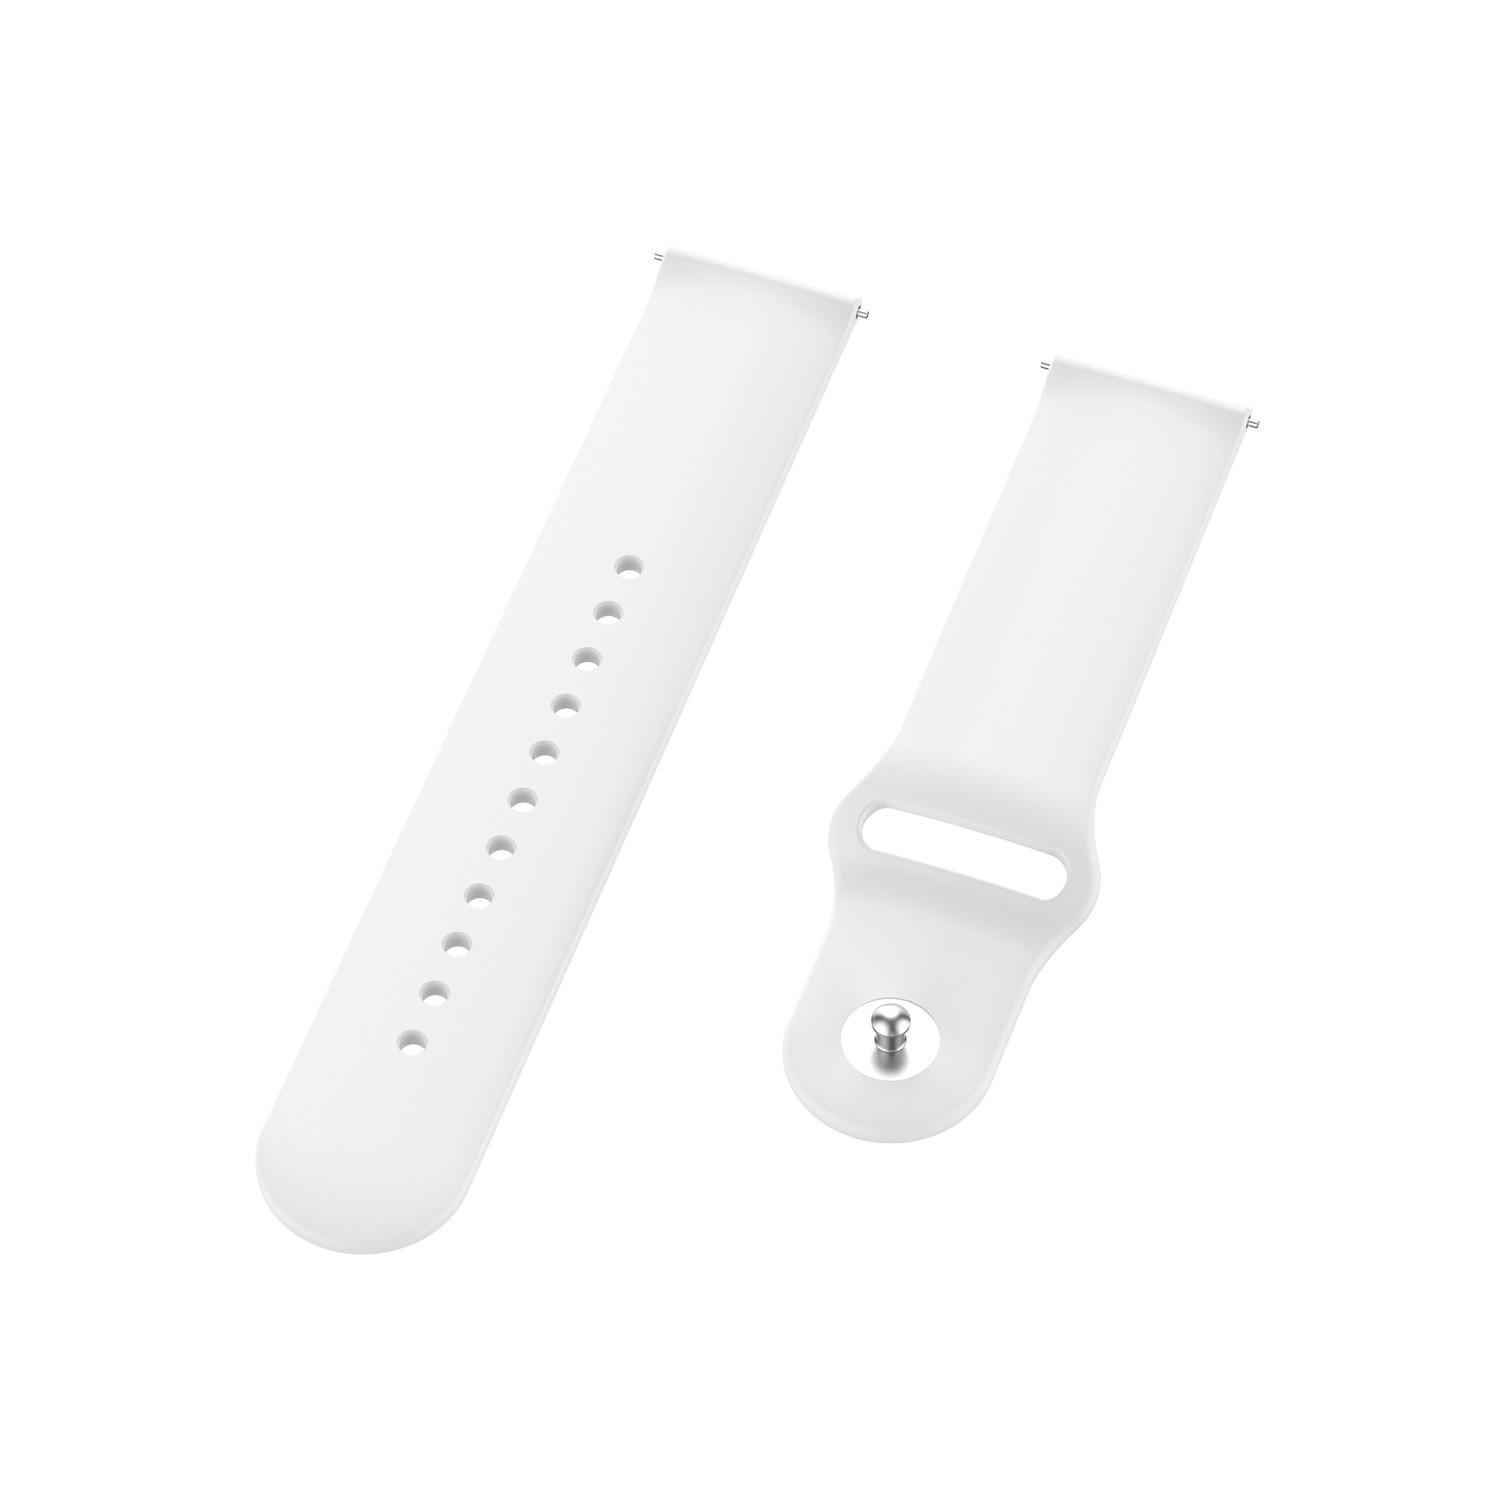 Correa deportiva de silicona para el Samsung Galaxy Watch - blanca